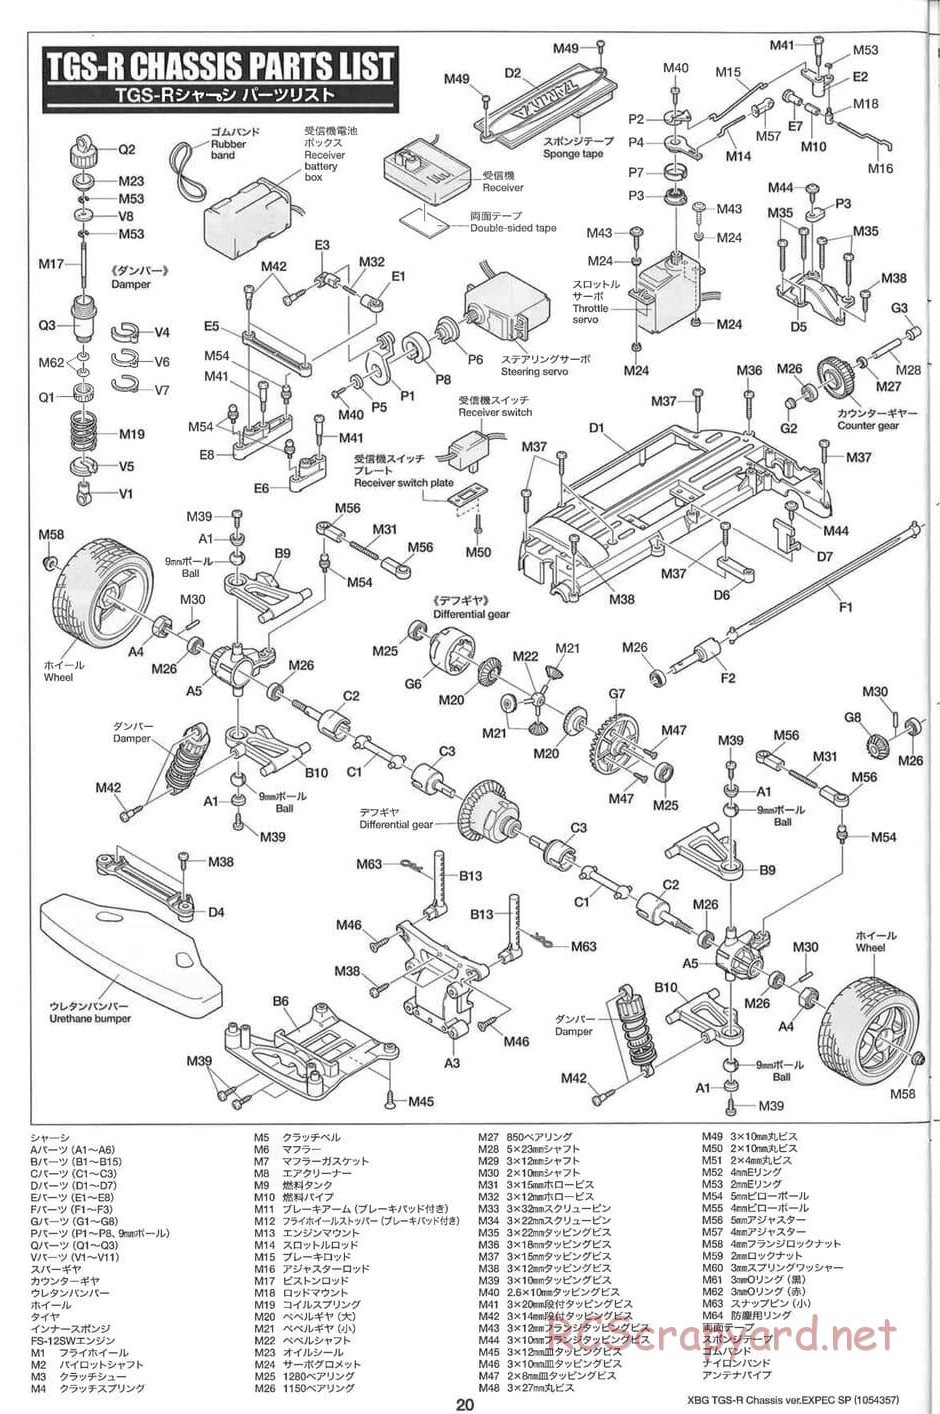 Tamiya - TGS-R Chassis - Manual - Page 20